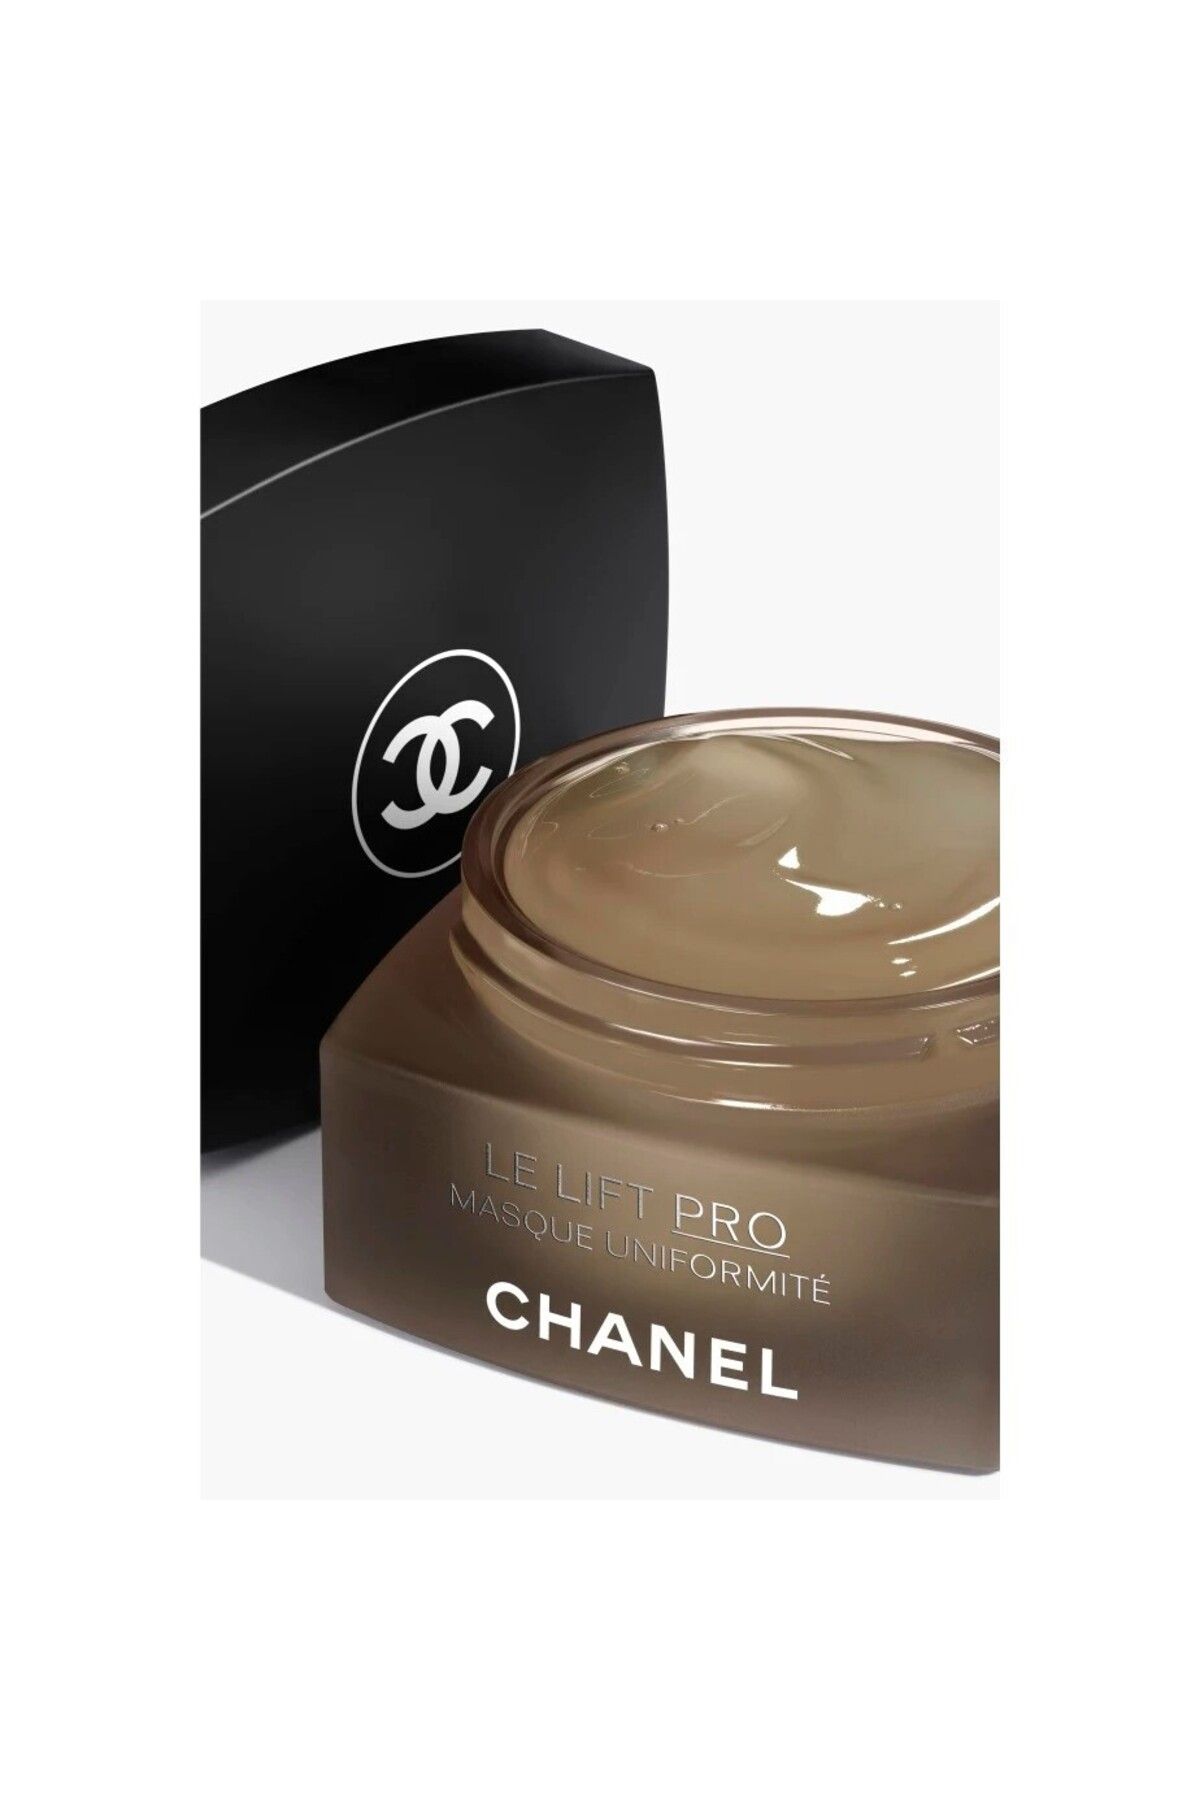 Chanel ماسک ضد لک لیفت پرو LE LIFT PRO رفع لکه های تیره و لیفت پوست ضد پیری 50 گرم